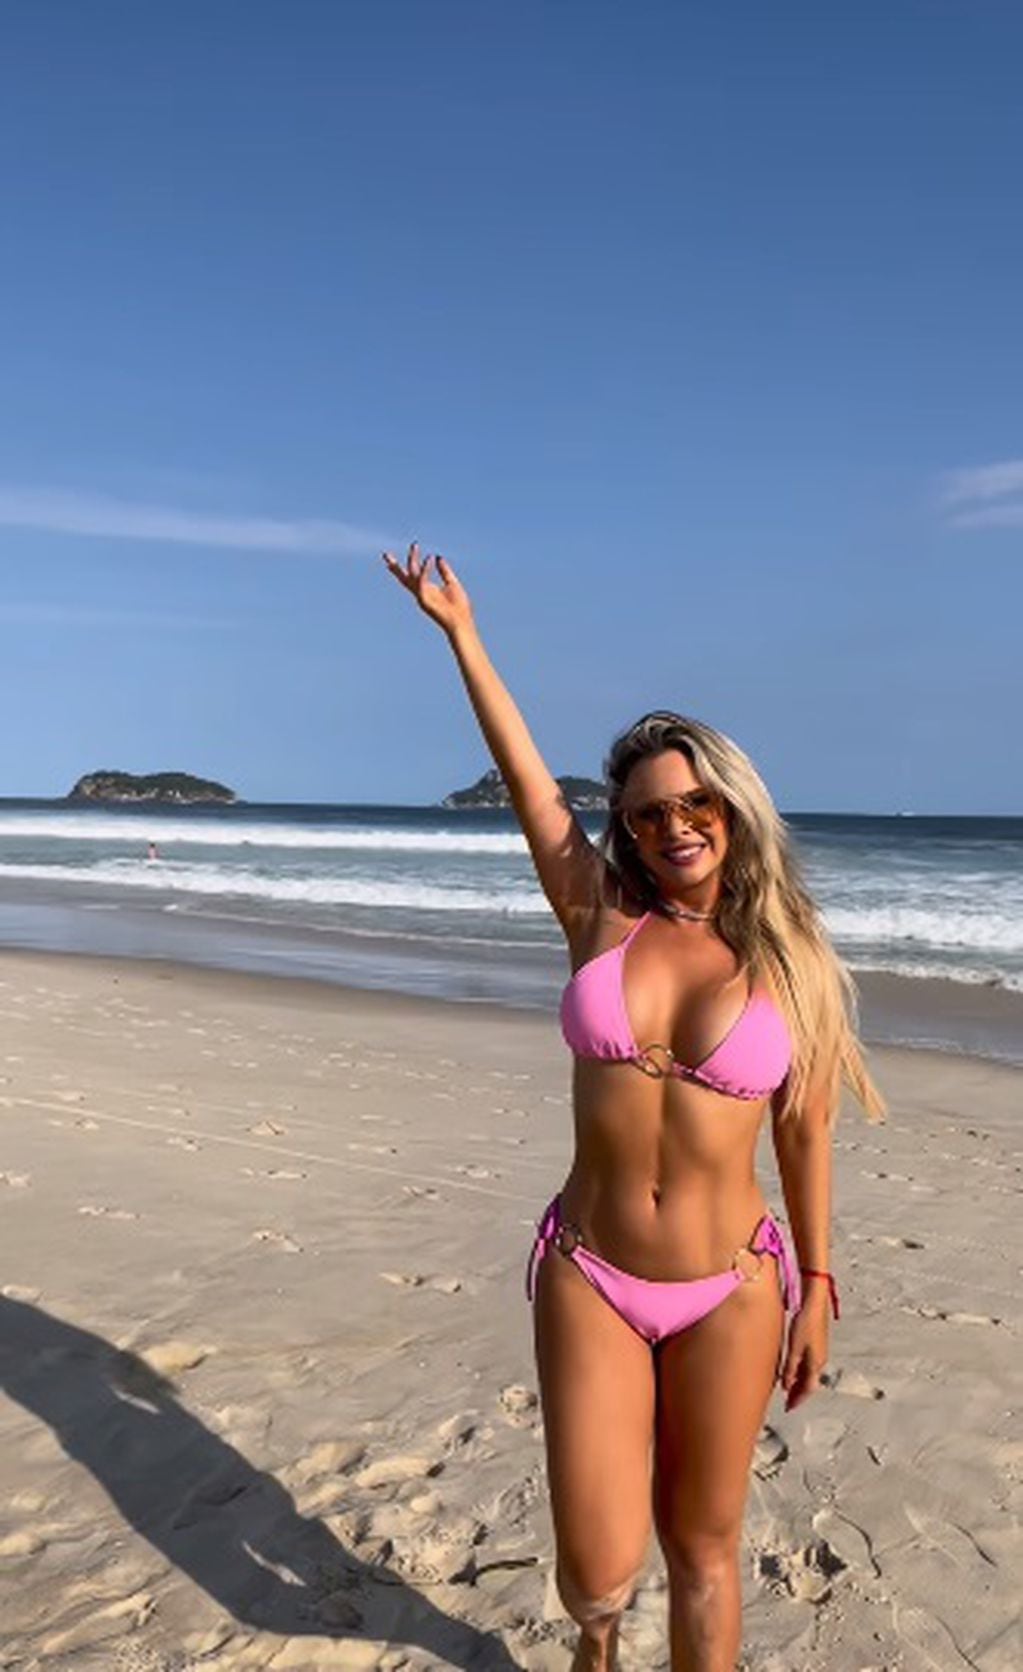 La panelista impactó con la bikini rosa que escogió para disfrutar de un día en la playa / Foto: Instagram